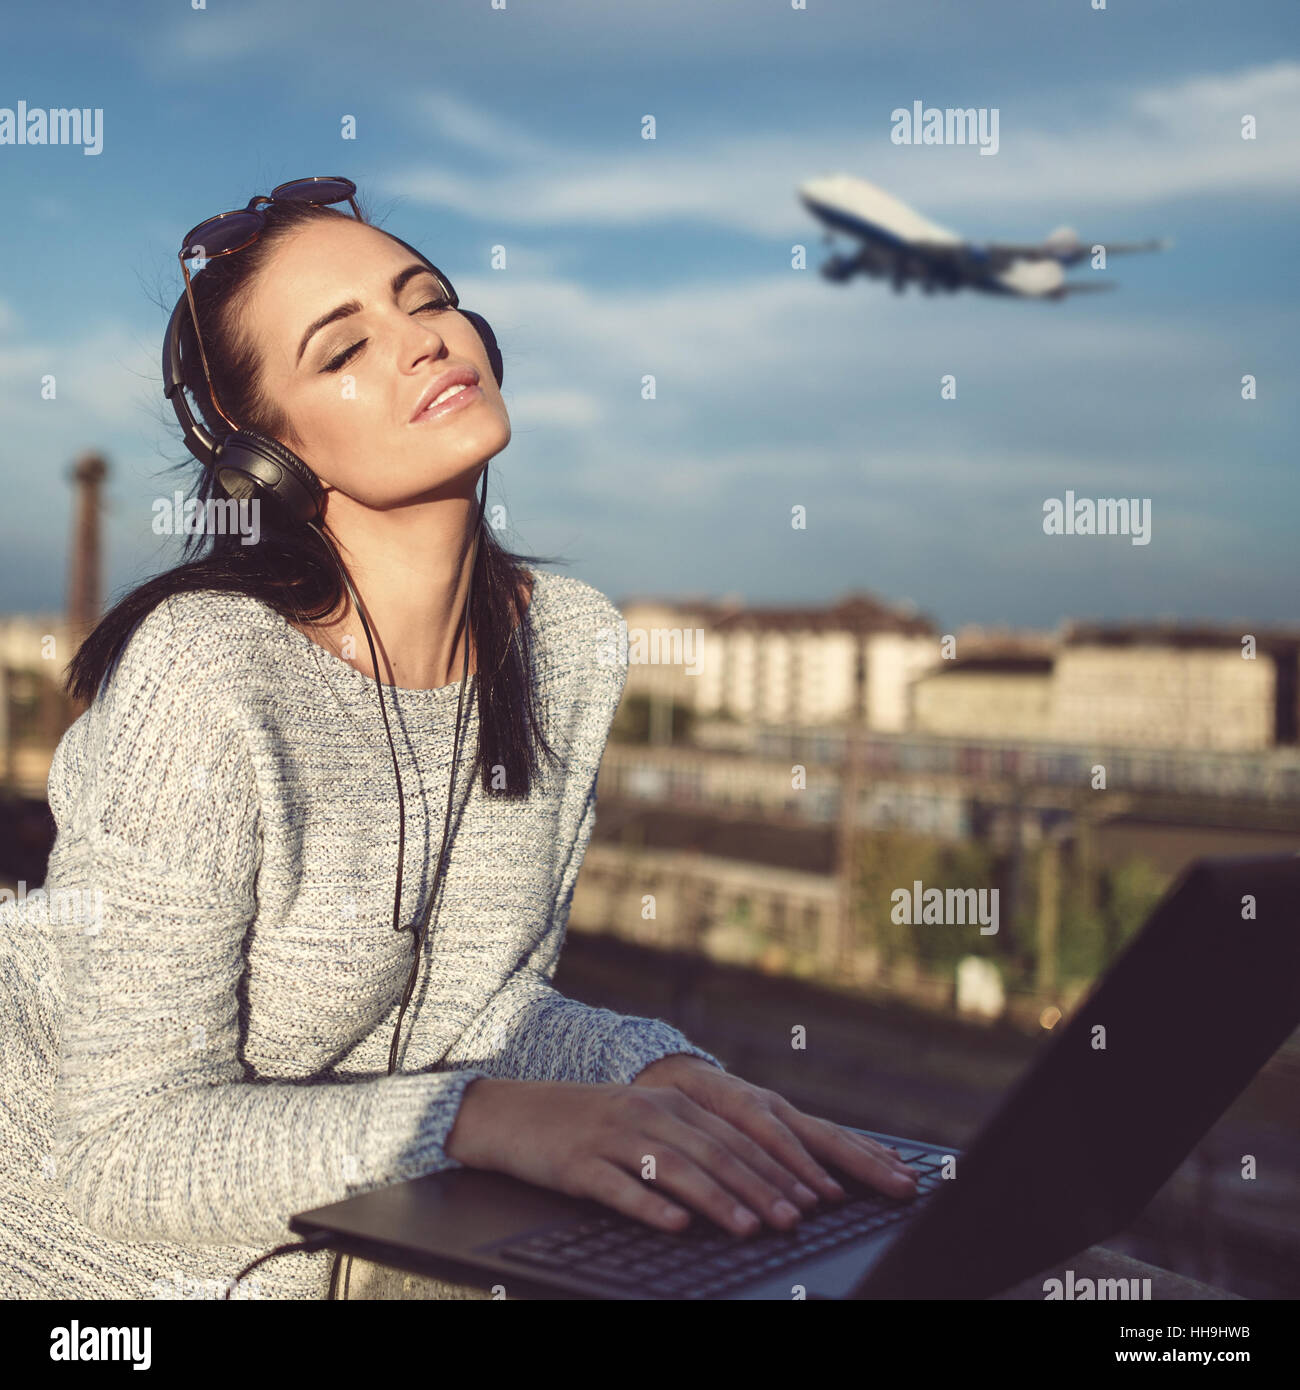 Jeune Femme rêvant de vol d'un avion, billet d'ordonner Banque D'Images